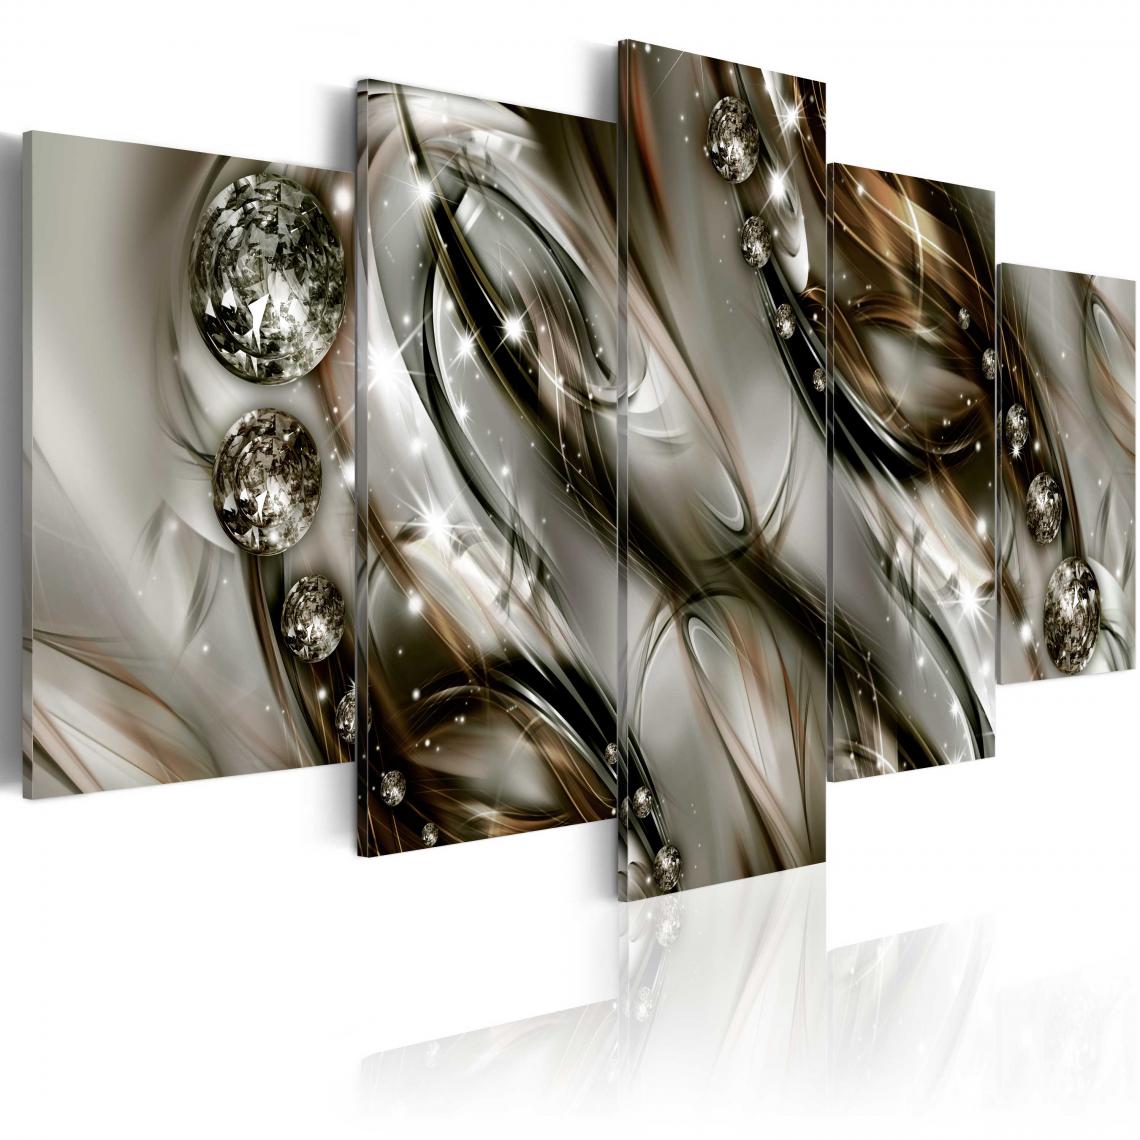 Decoshop26 - Tableau sur toile en 5 panneaux décoration murale image imprimée cadre en bois à suspendre Variations cosmiques 200x100 cm 11_0002466 - Tableaux, peintures